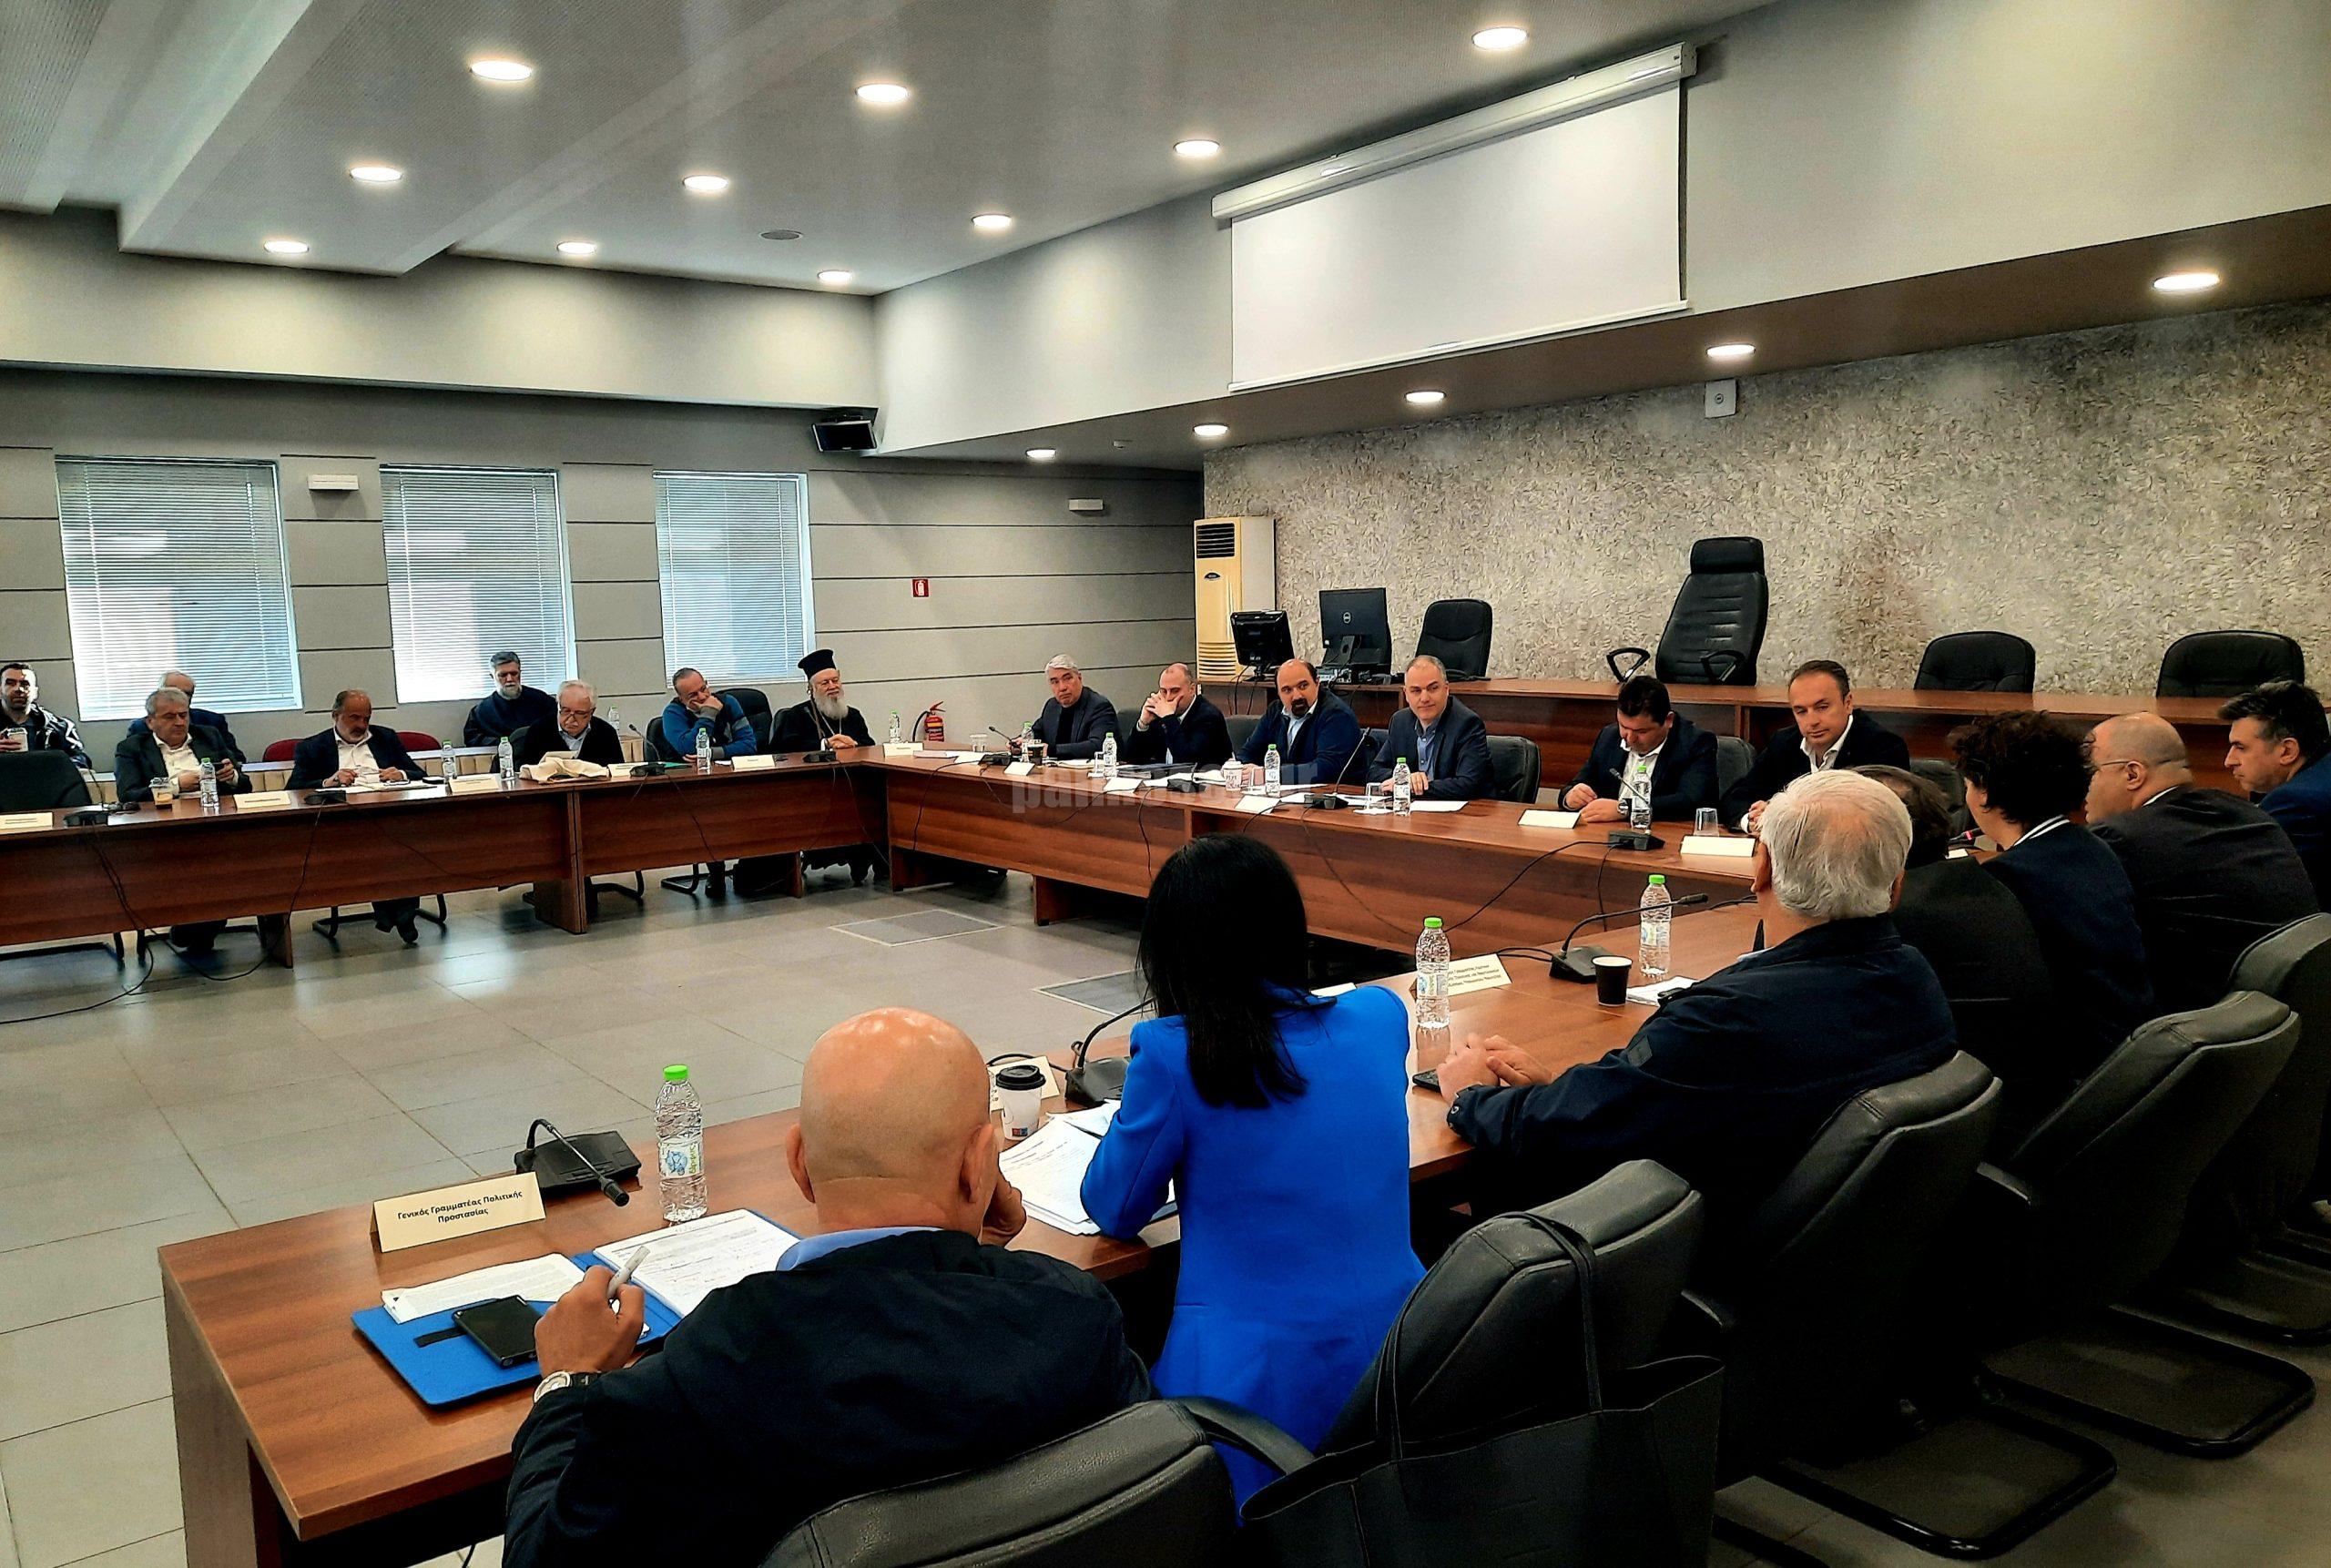 Σύσκεψη με διευρυμένο κυβερνητικό κλιμάκιο  στην έδρα της Π.Ε. Εύβοιας Χαλκίδα, στο πλαίσιο της παρουσίασης του Αναπτυξιακού Σχεδίου Στερεάς Ελλάδας.